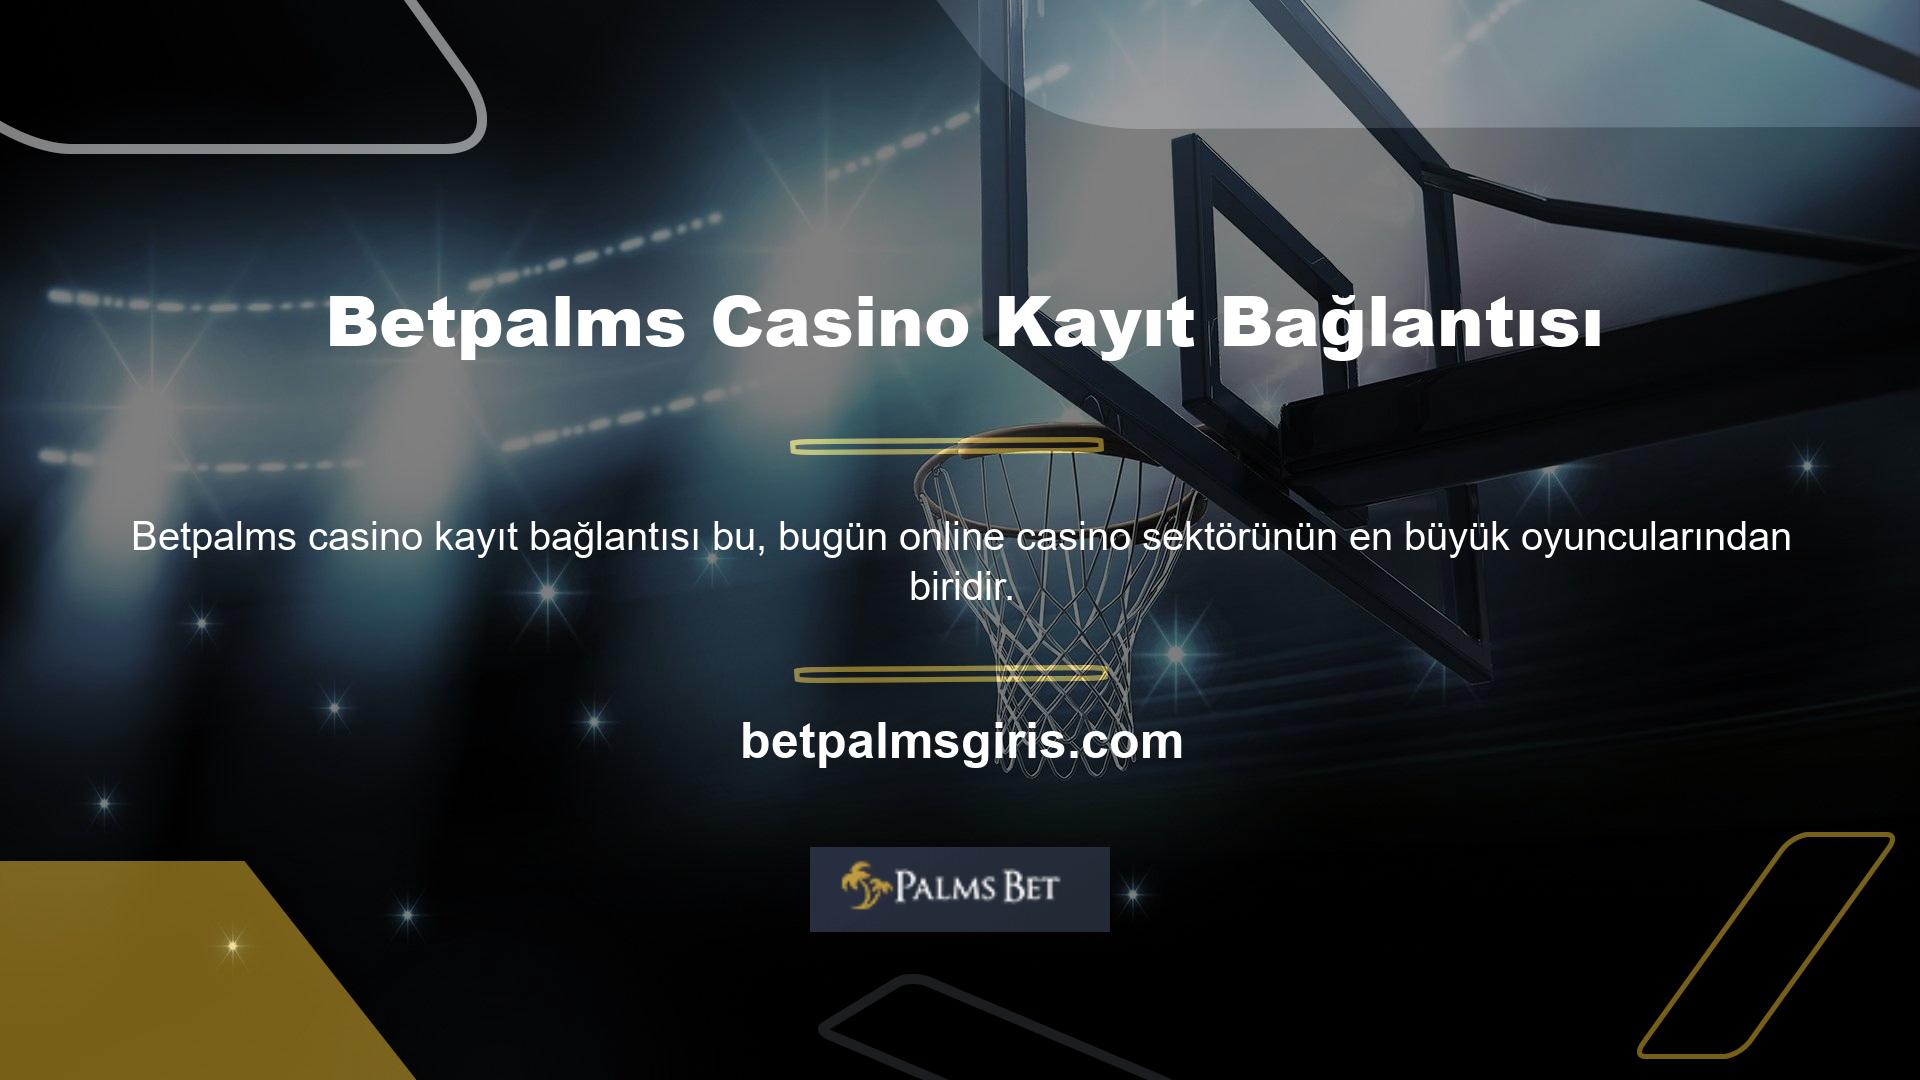 Betpalms Casino Kayıt Bağlantısı Casino Kayıt Bağlantısı Şirket, spor bahisleri, casino oyunları ve hatta canlı krupiyer oyunları dahil olmak üzere çeşitli casino bahis seçenekleri sunmaktadır